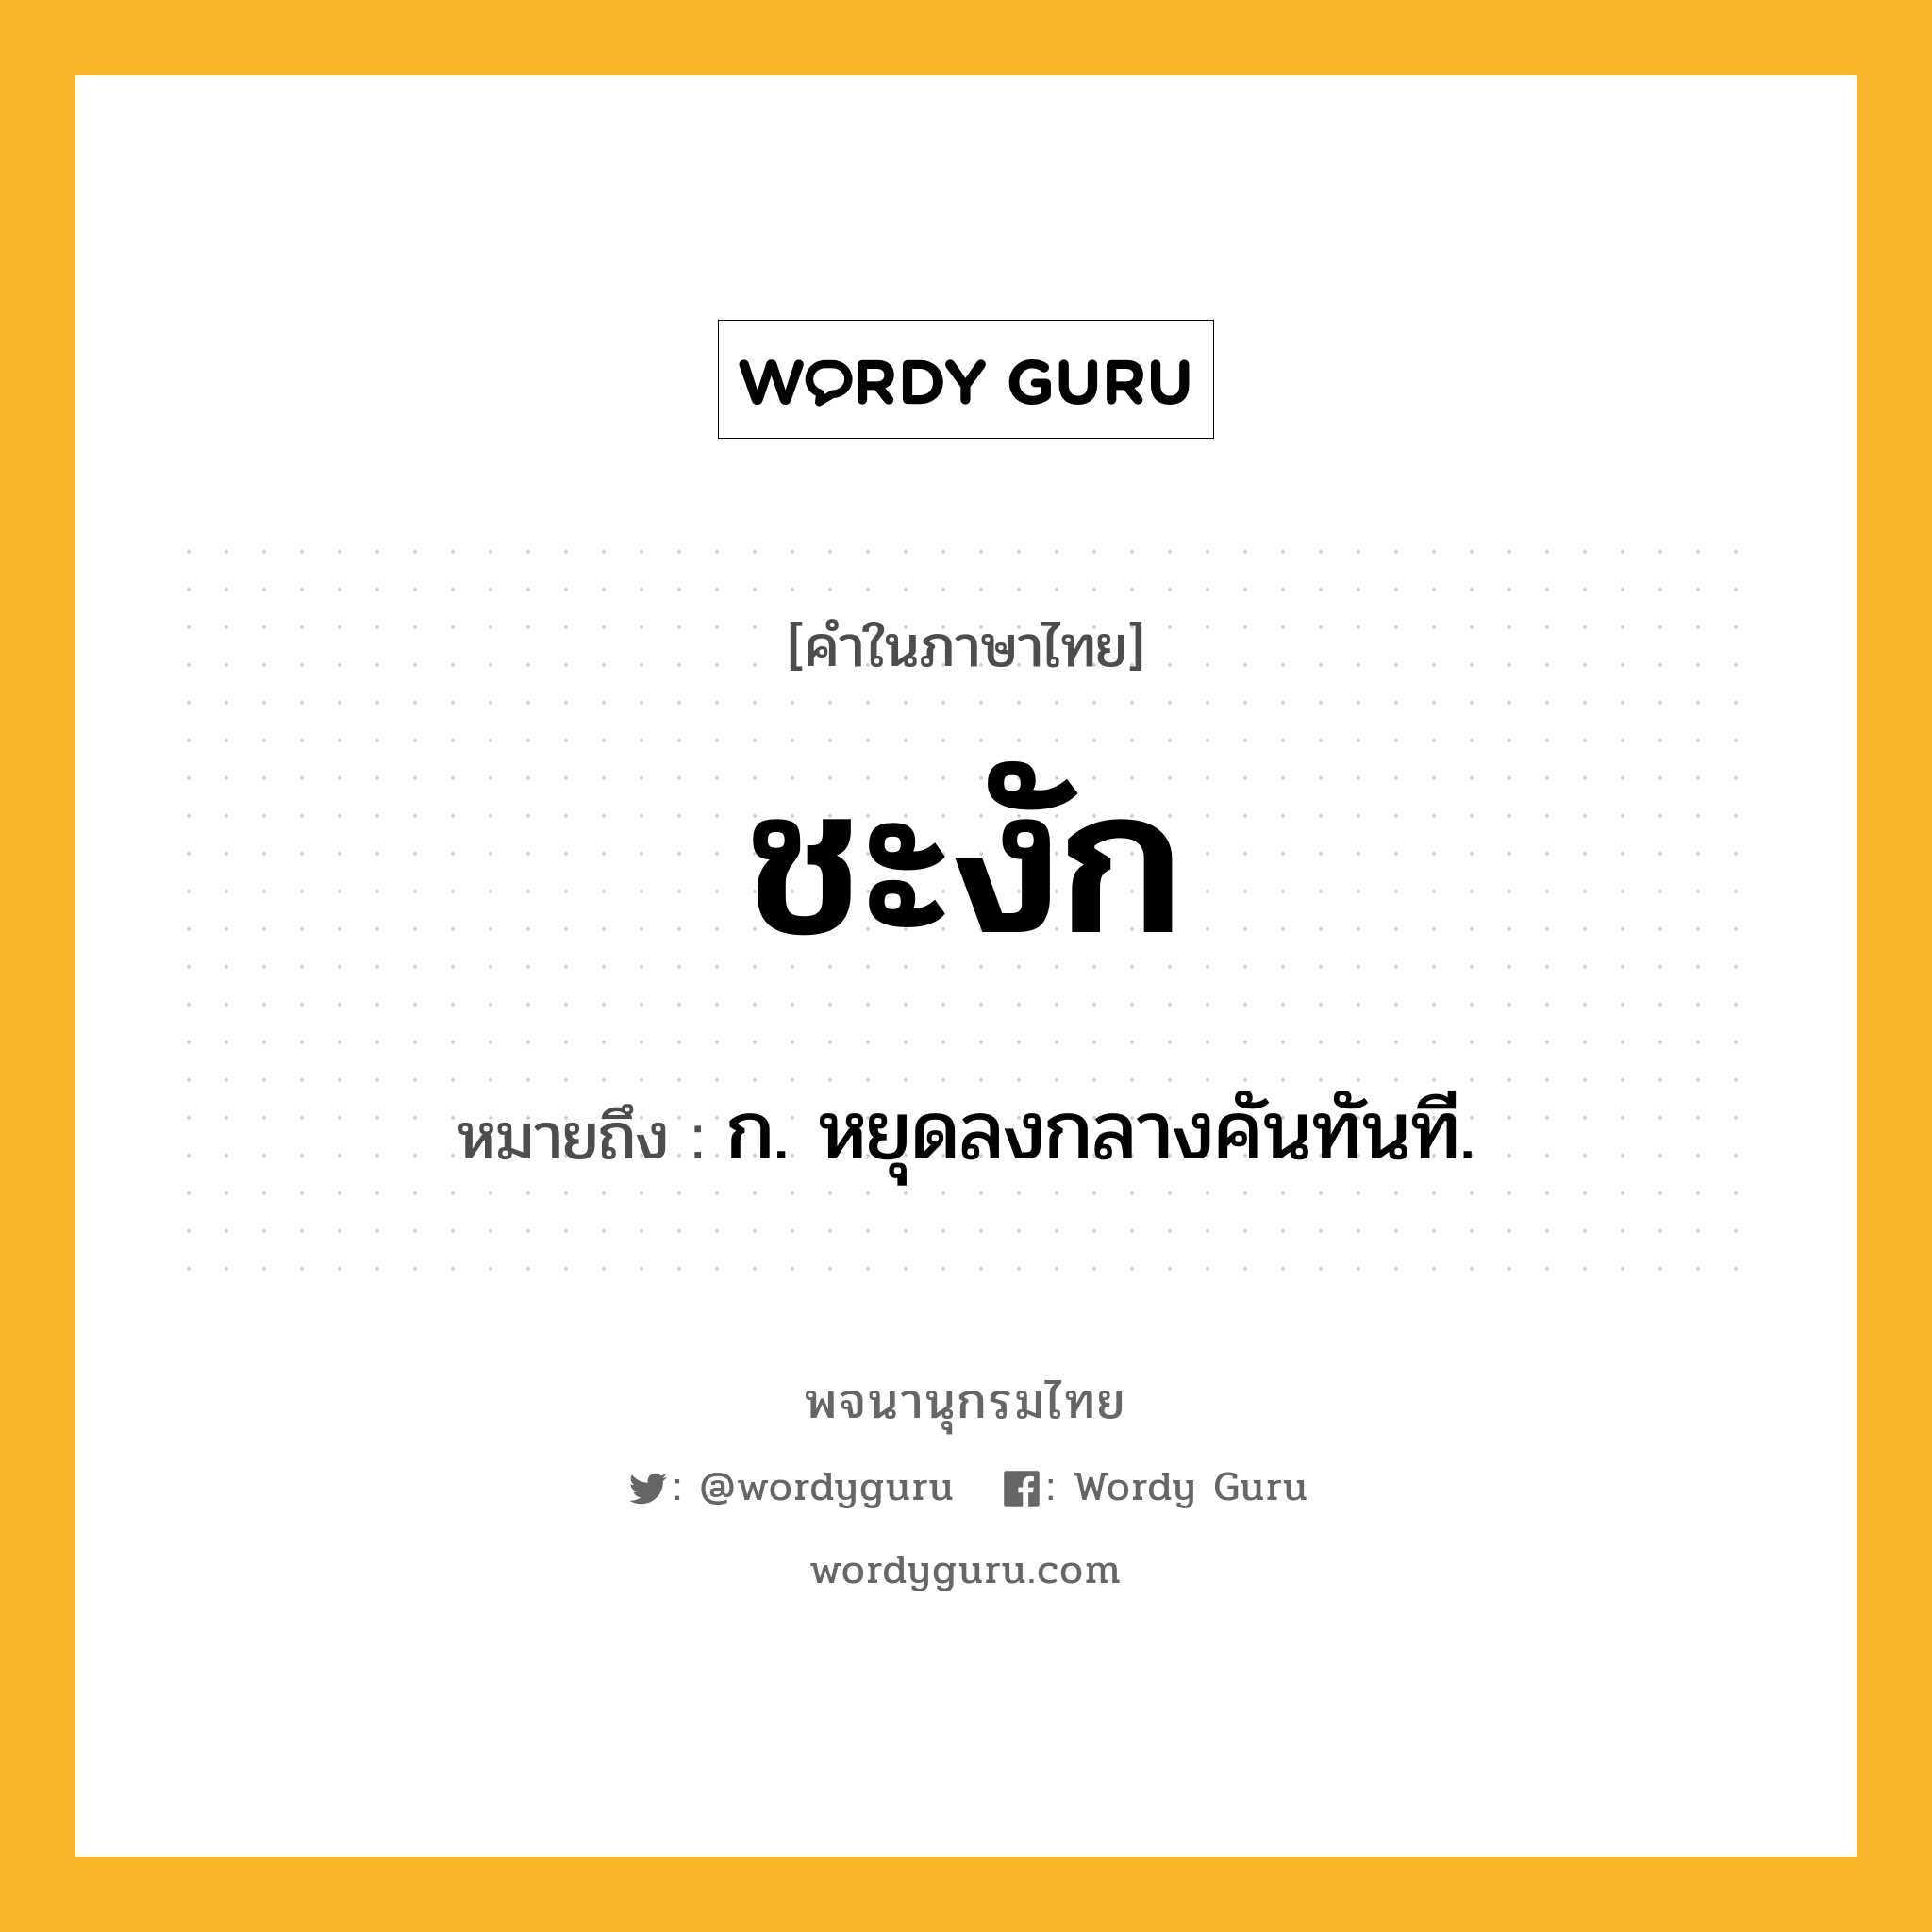 ชะงัก หมายถึงอะไร?, คำในภาษาไทย ชะงัก หมายถึง ก. หยุดลงกลางคันทันที.